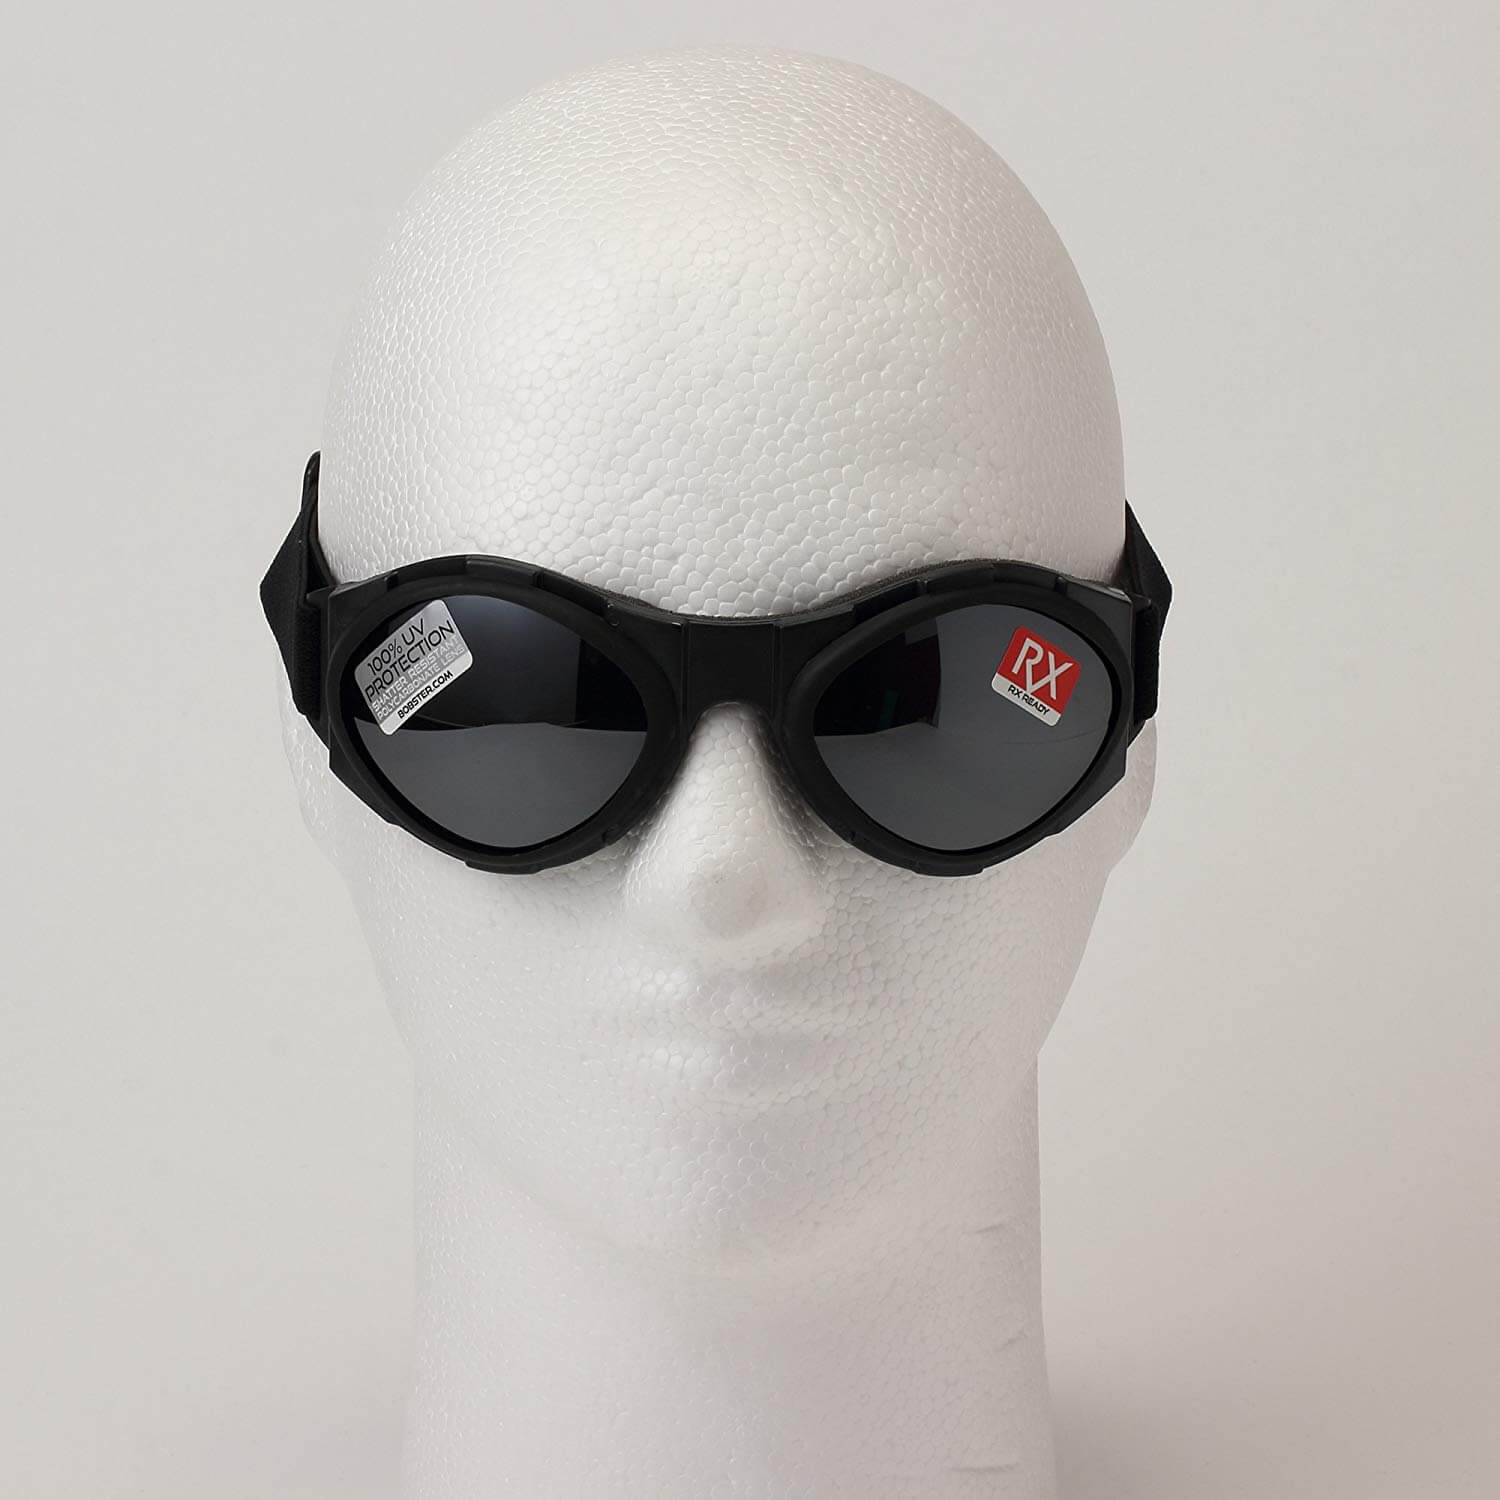 Motorcycle goggles to buy on Amazon